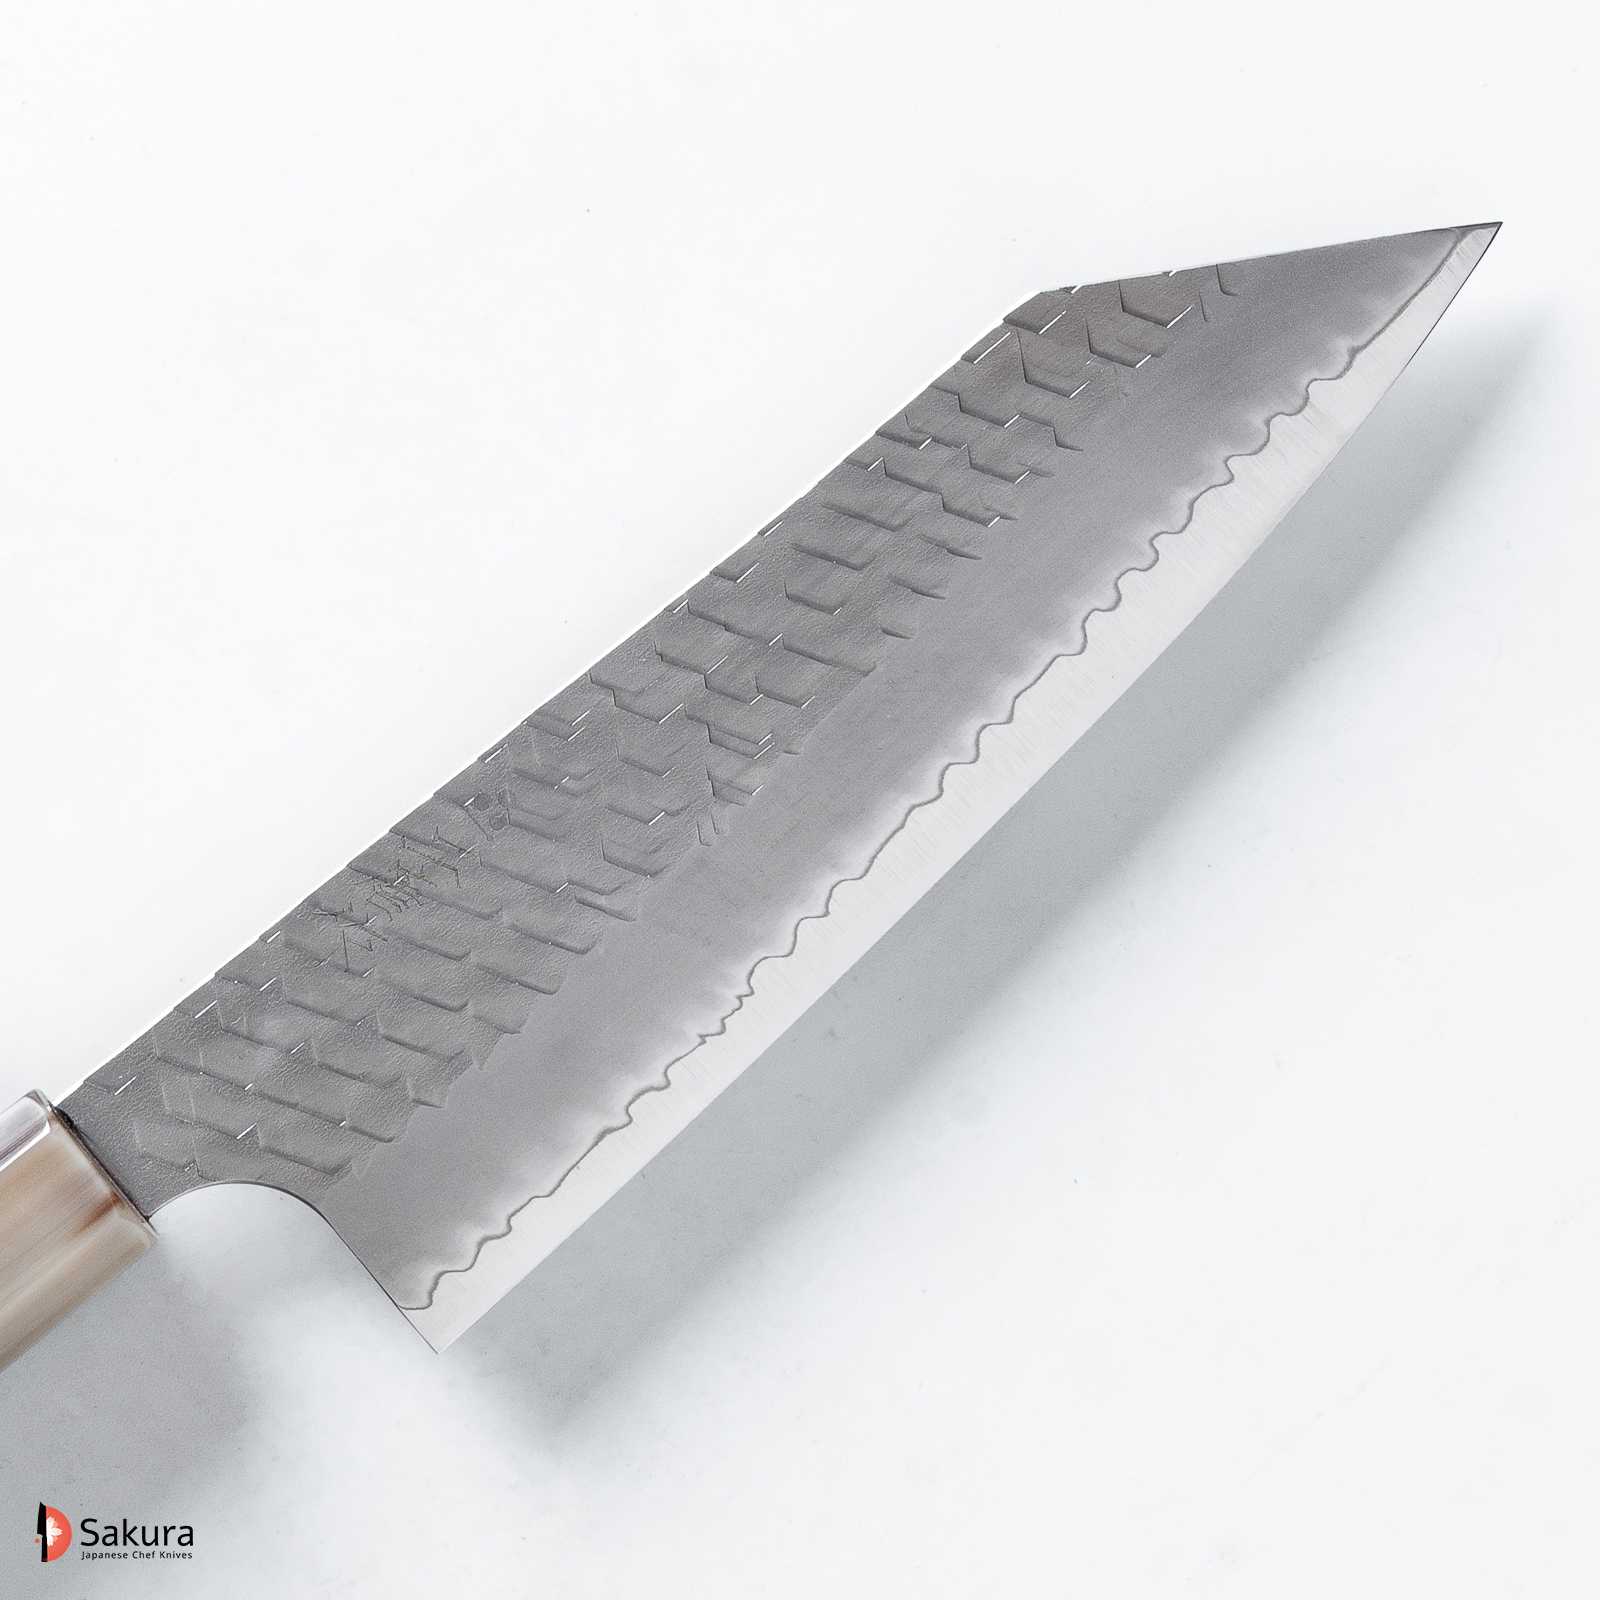 סכין  רב-תכליתית בונקה 165מ״מ פלדת R2/SG2 גימור מיגאקי מבריק עם ריקוע פטיש ניגארה יפן [SKNIGASG2MTBUNK165_16]